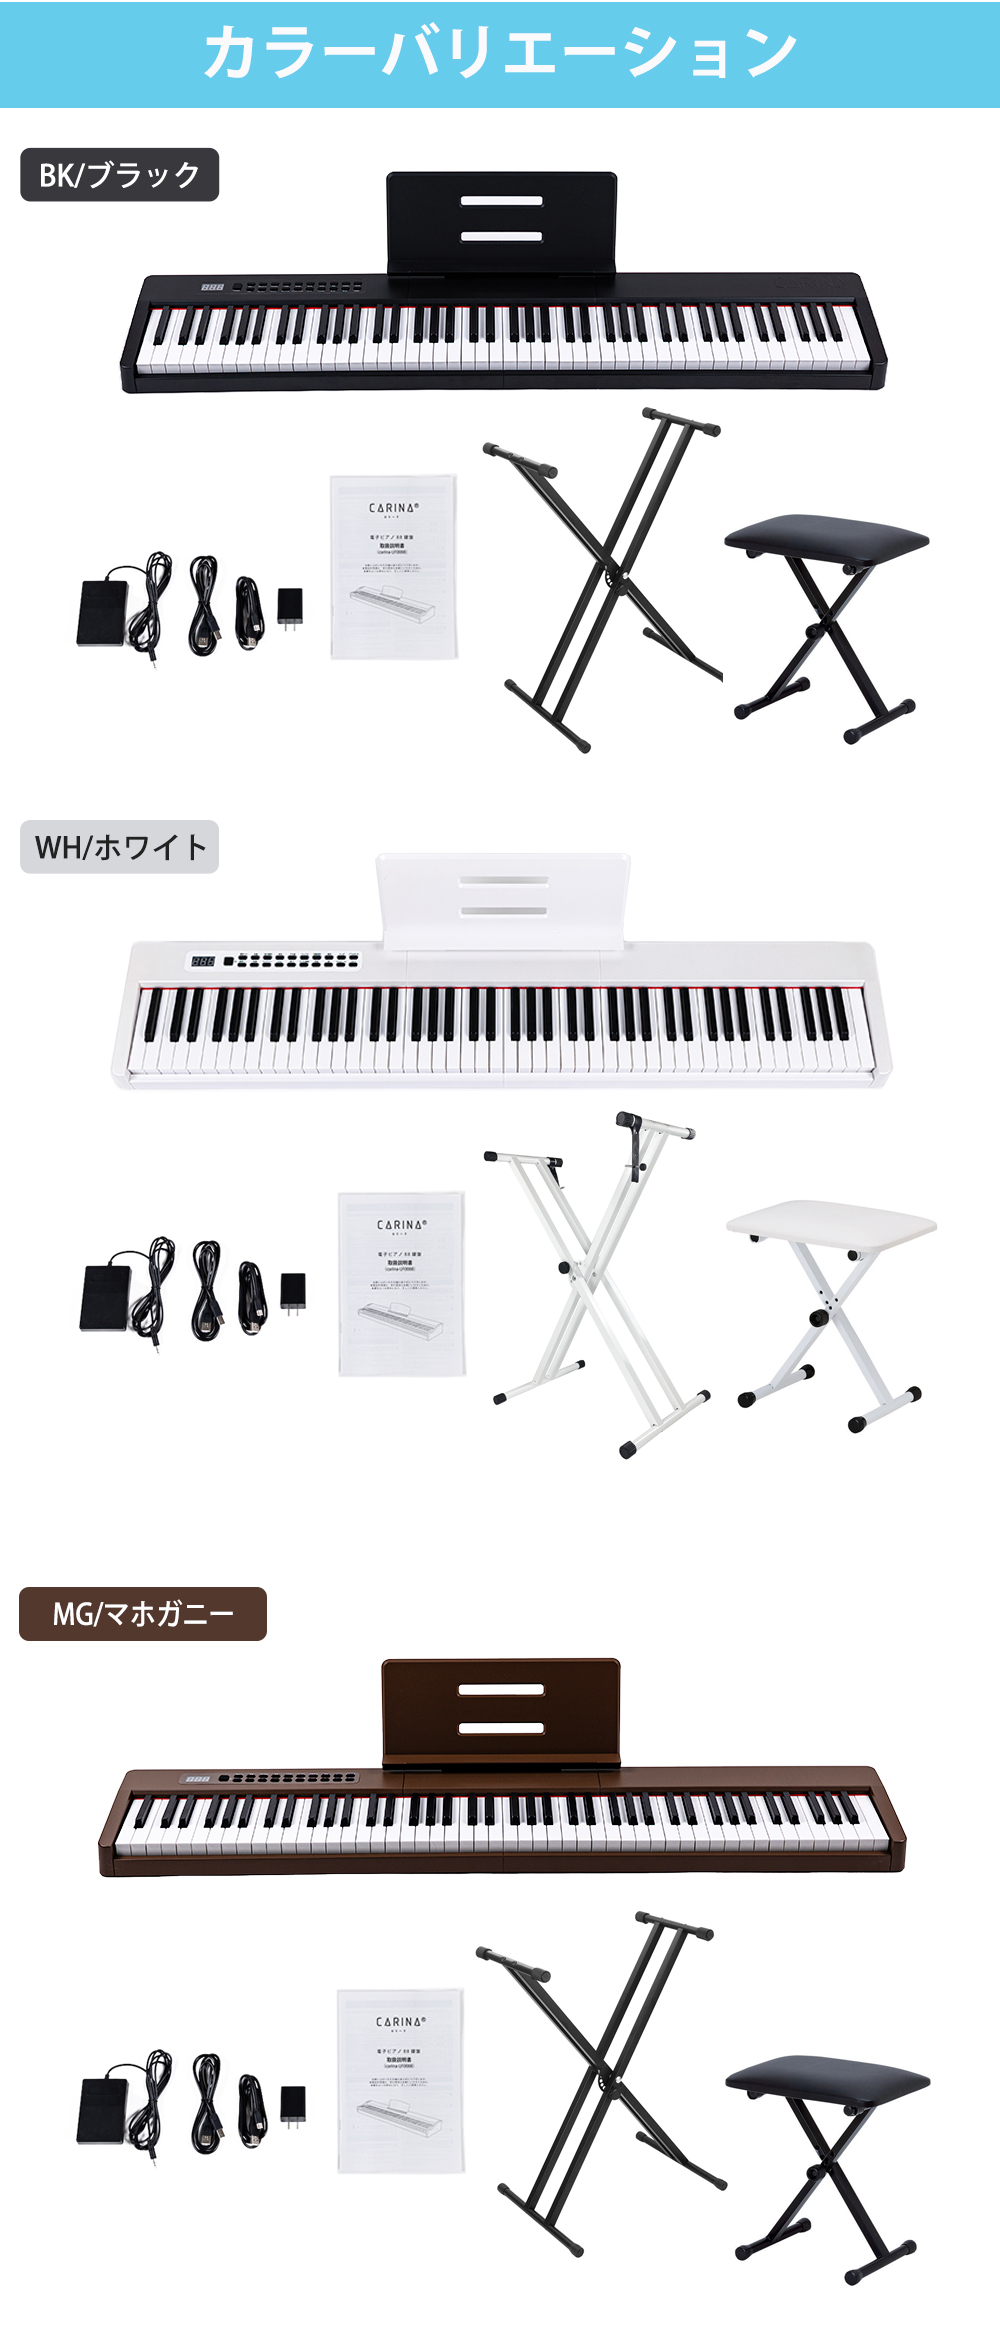 楽天市場】【3カラー】電子ピアノ 88鍵盤 スタンド 椅子セット dream